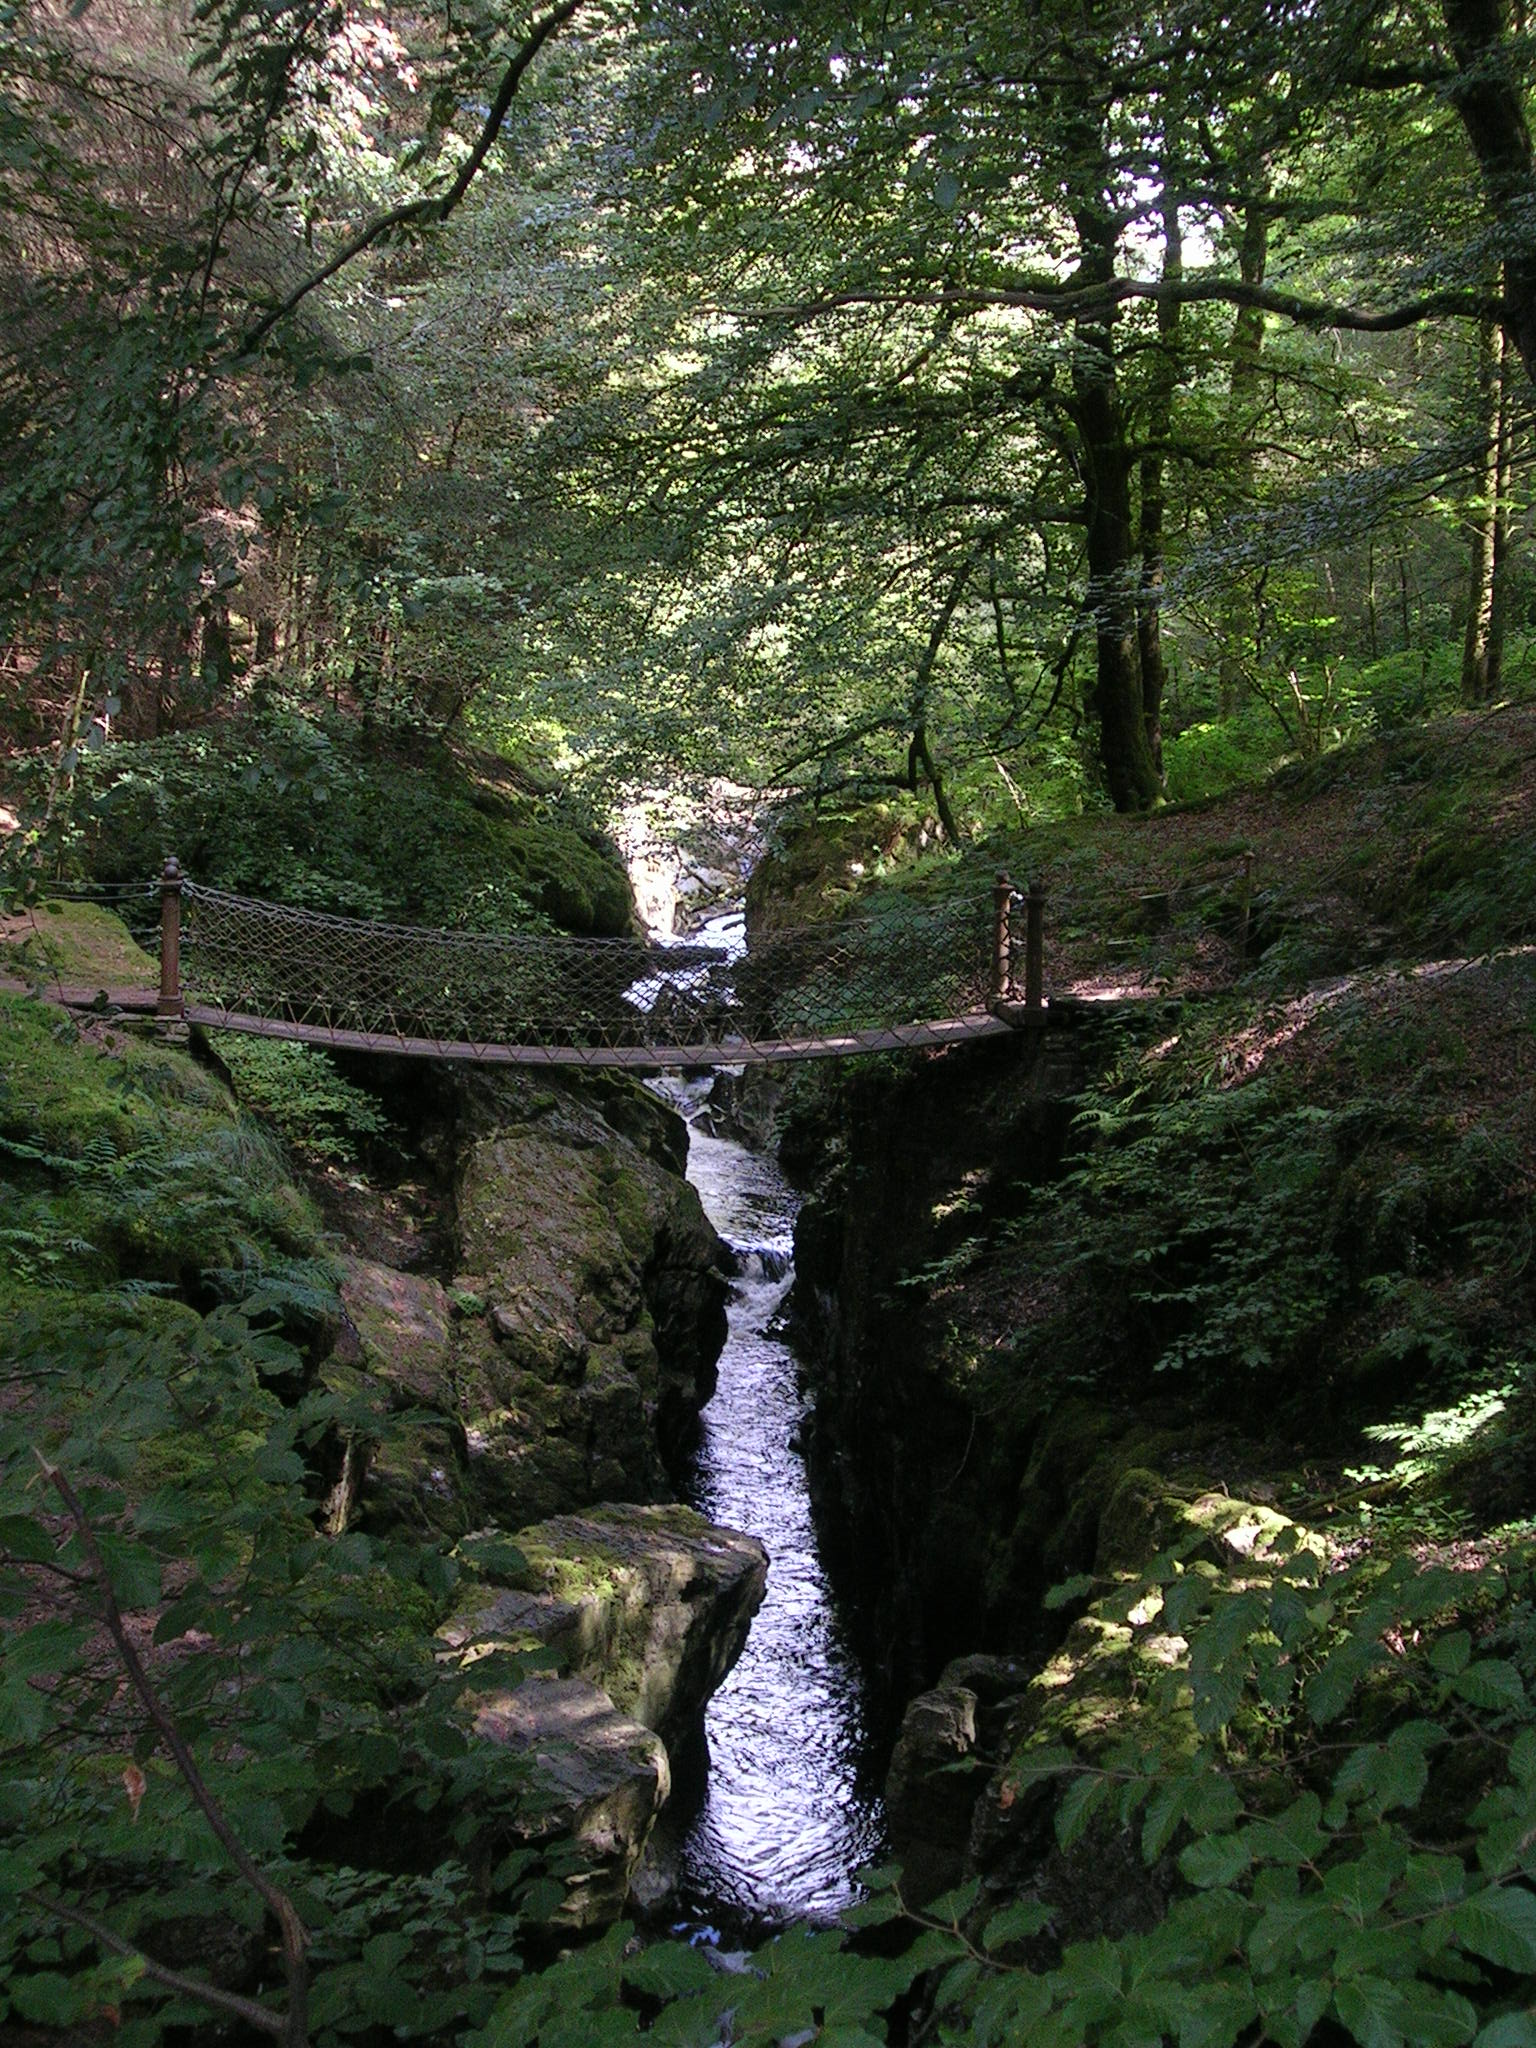 A footbridge across a stream in the Hafor, Powys